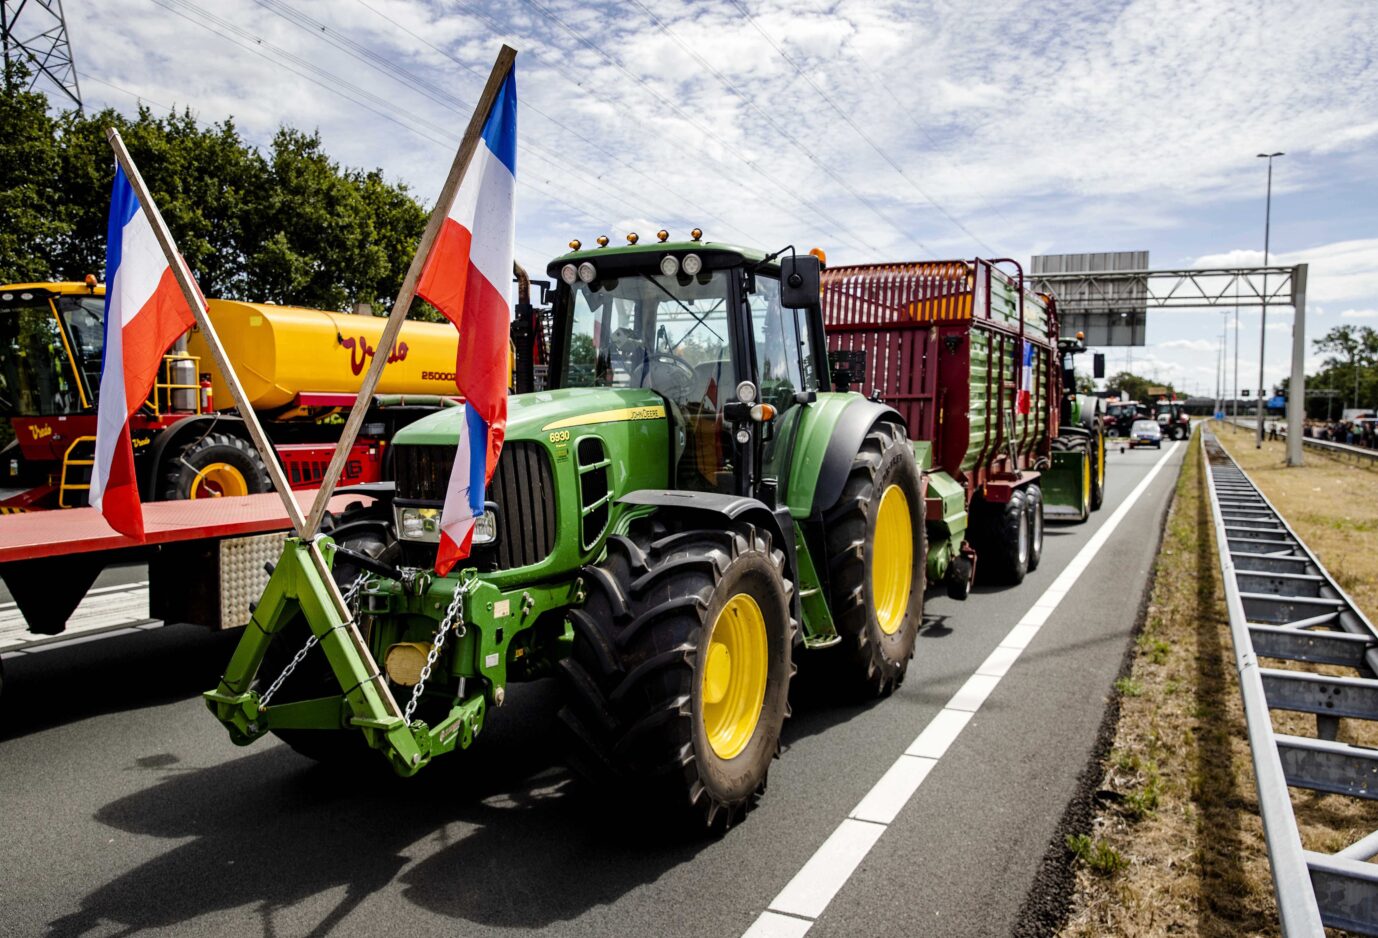 Bauernproteste in Almelo. Das Wahlergebnis is ihr erster Etappensieg. Denn es gab einen Wahlsieg der Bauernpartei.